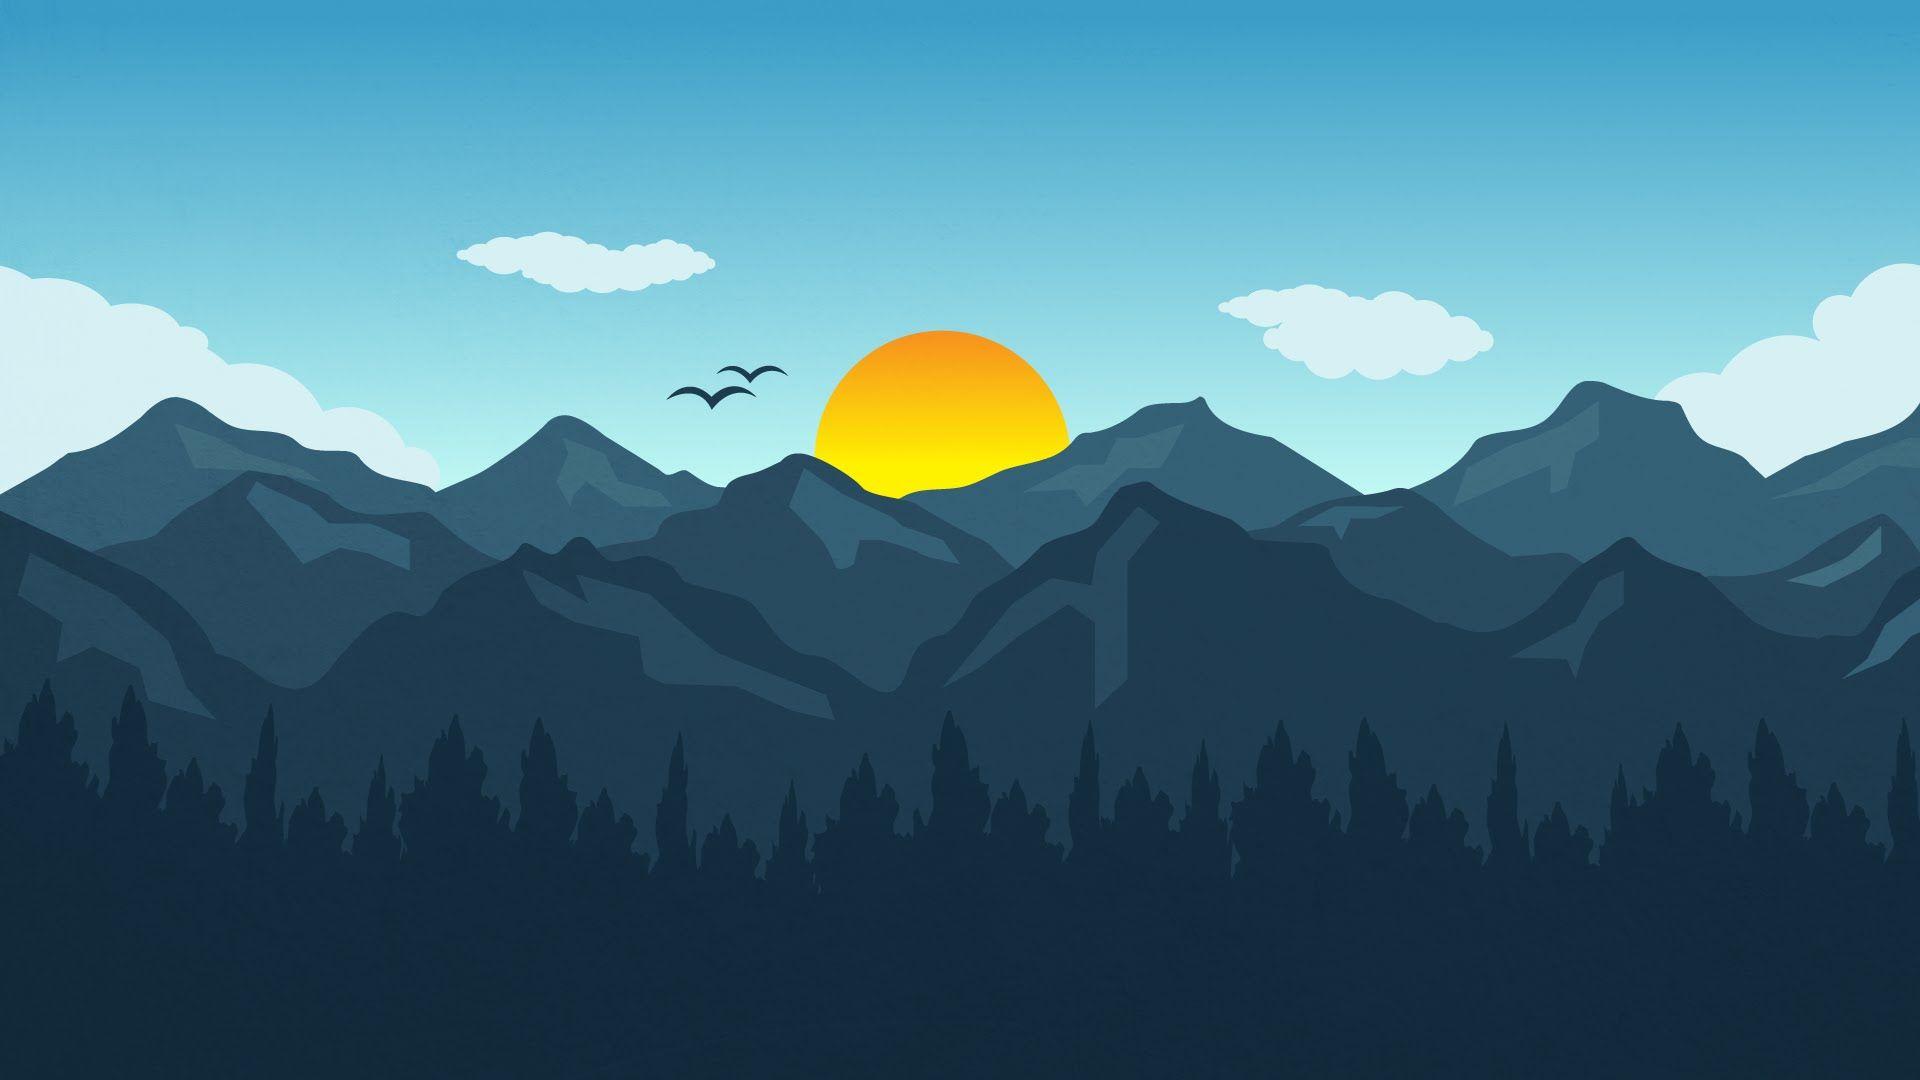 free download illustrator background design